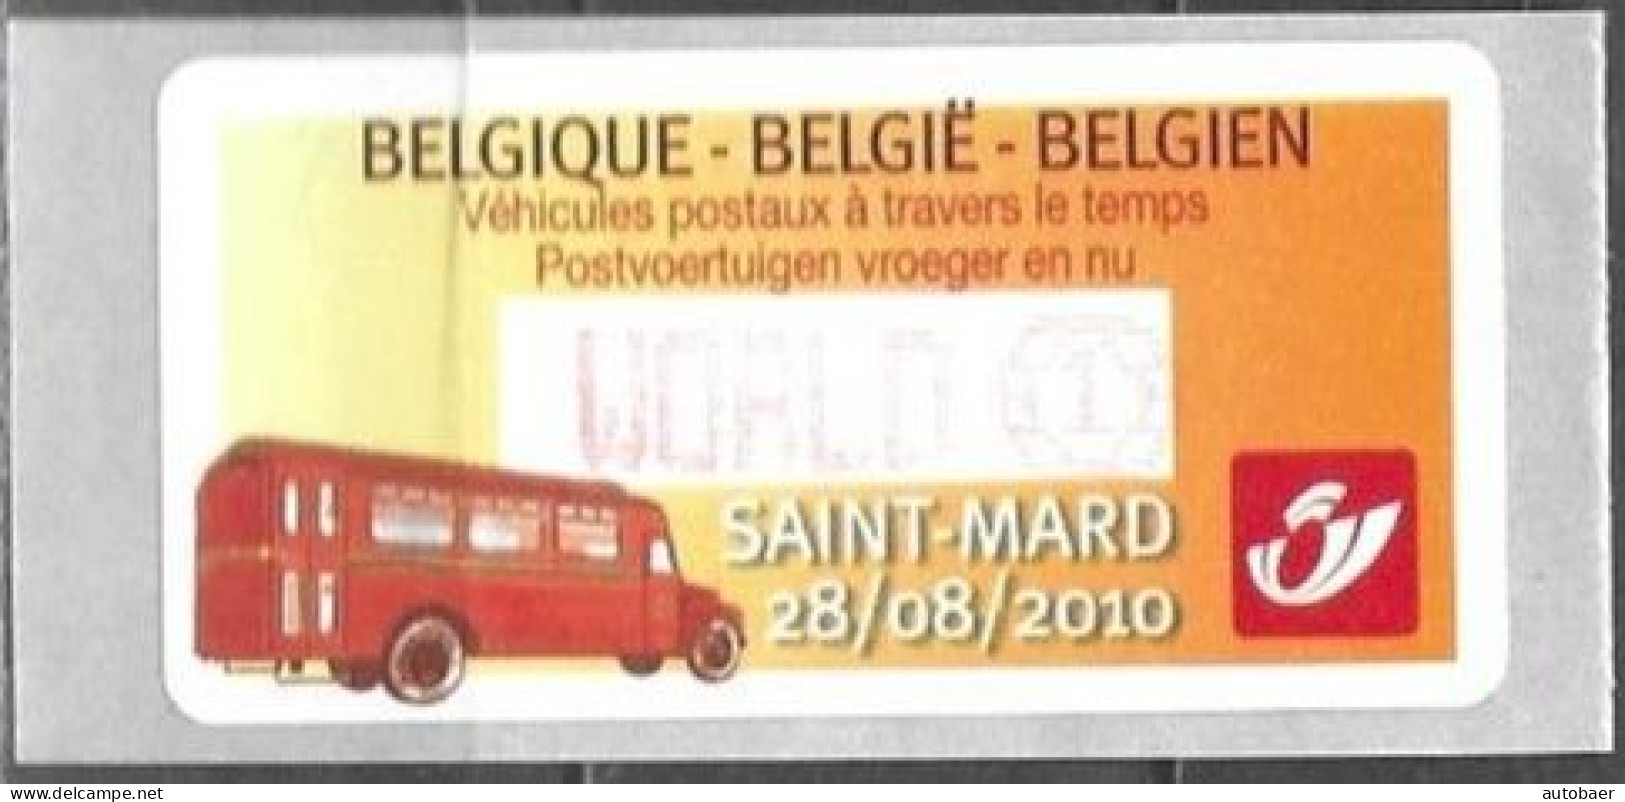 Belgium Belgique Belgien 2010 ATM Machine Stamp Saint-Mard Post Bus Mi. No. 70 "World 1" MNH Neuf ** Postfrisch - Postfris